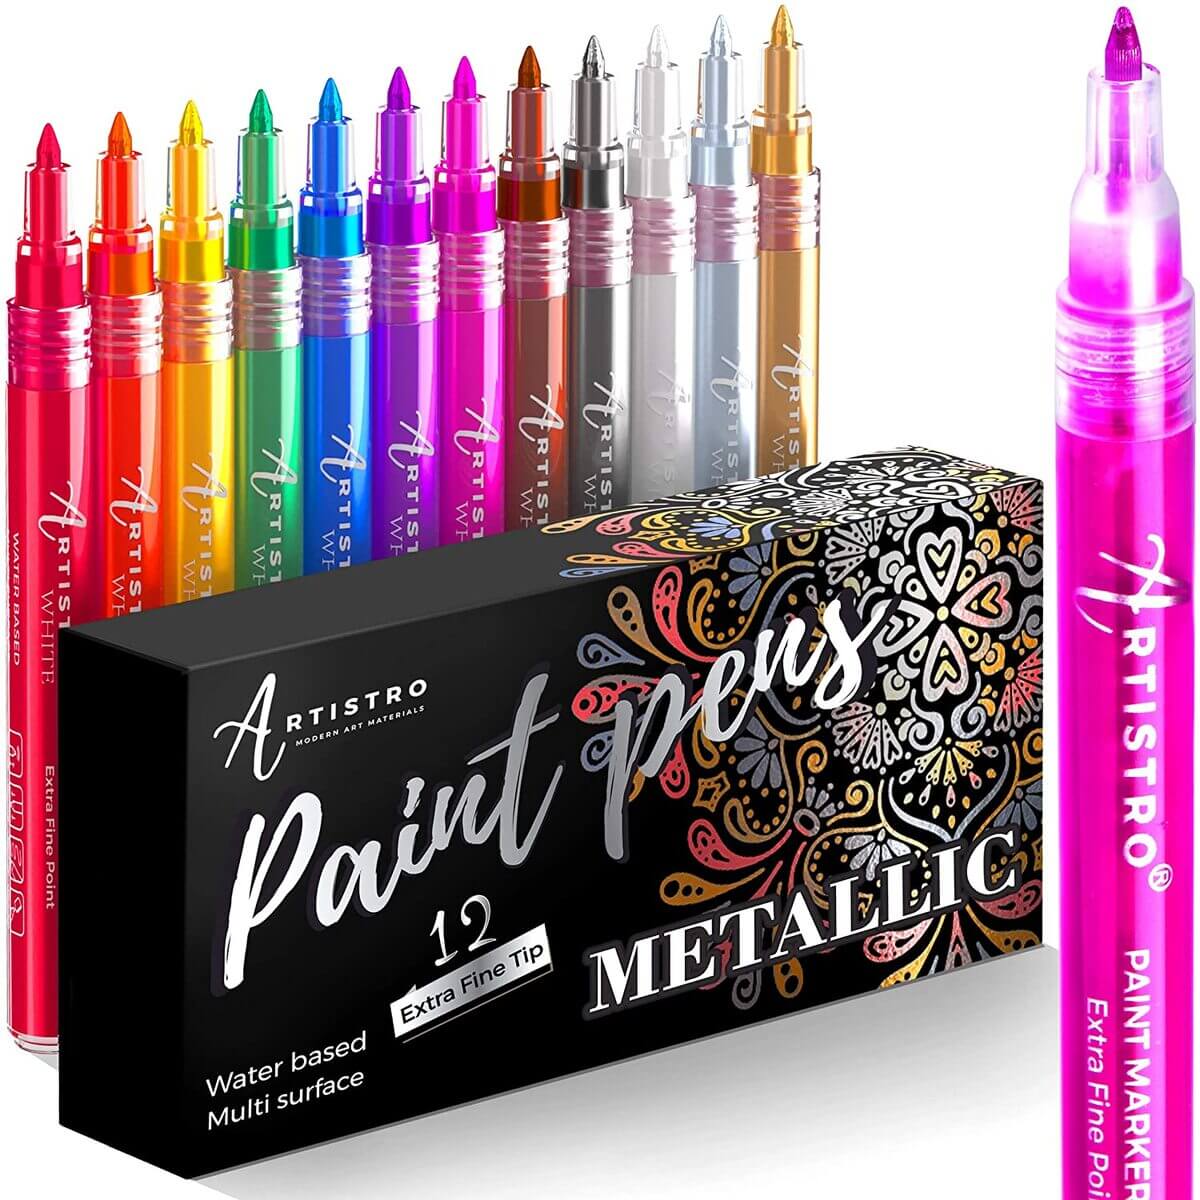 TEHAUX 100 Pcs Marker Refill Fine Tip Paint Pens Lengthen Pen Tips Acrylic  Paint Markers Marker Pen Replacement Nibs Universal Paint Pen Tips